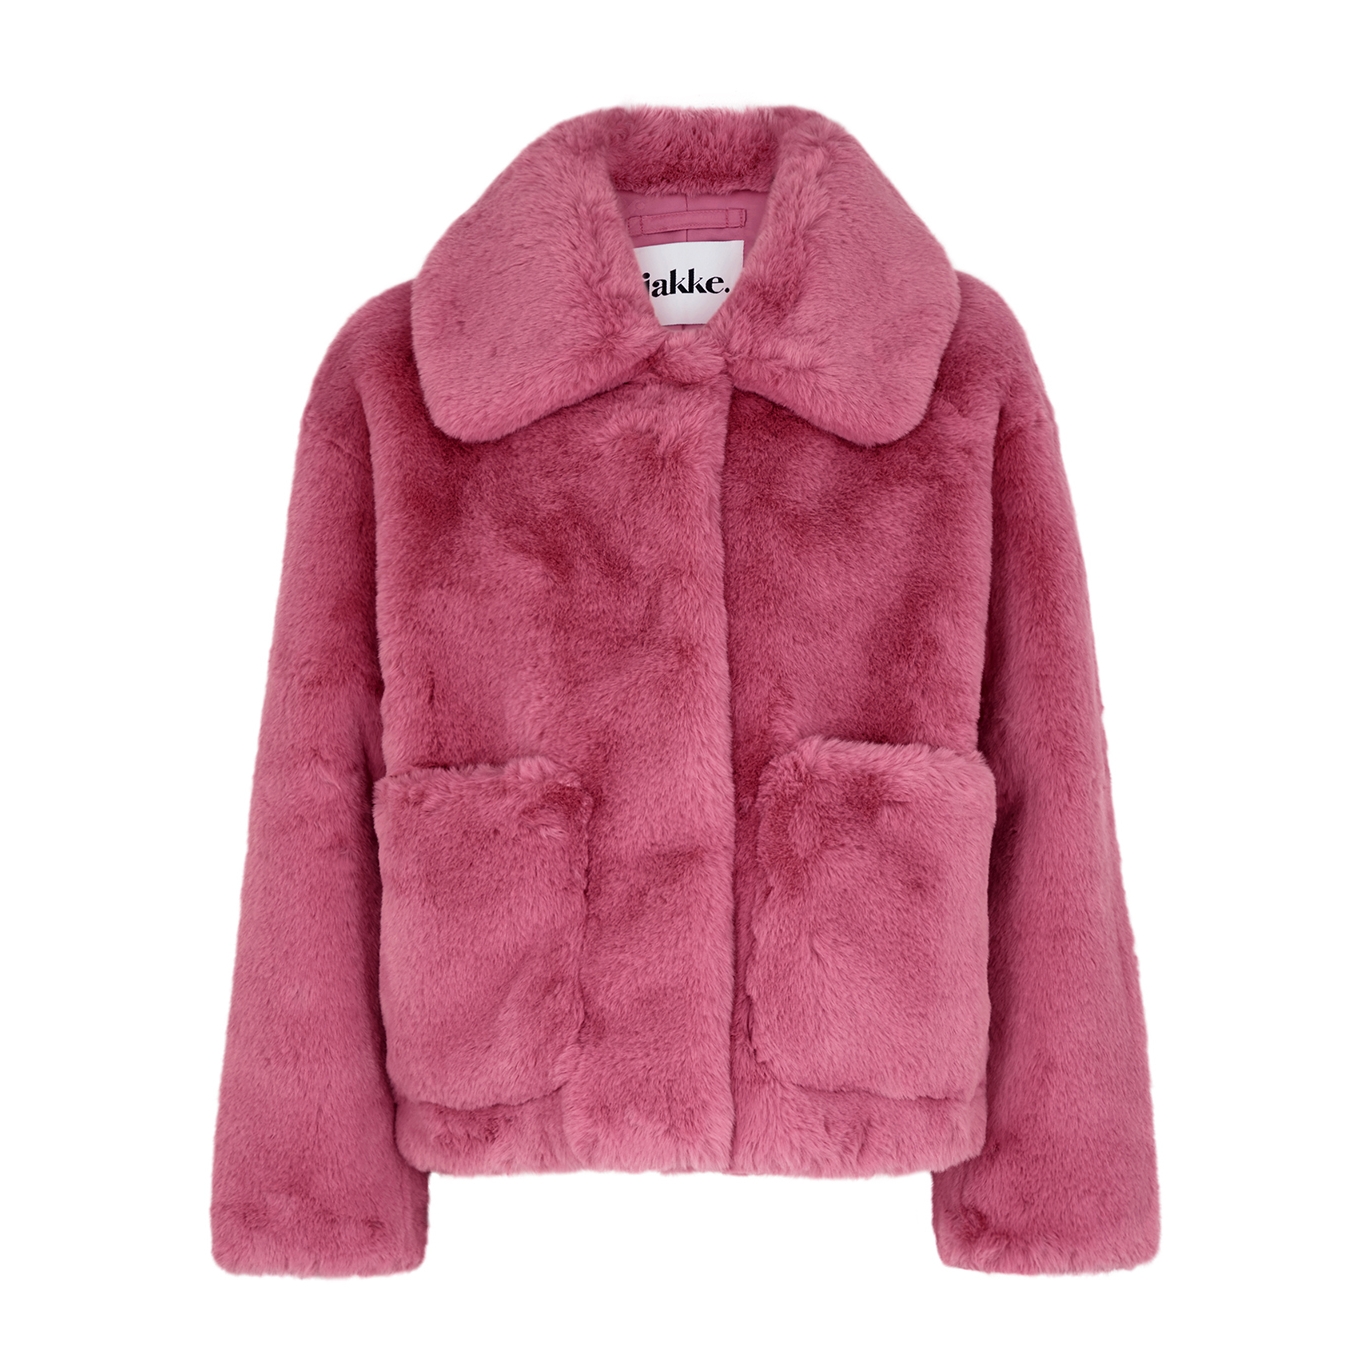 Jakke Traci Pink Faux Fur Coat - Bright Pink - L